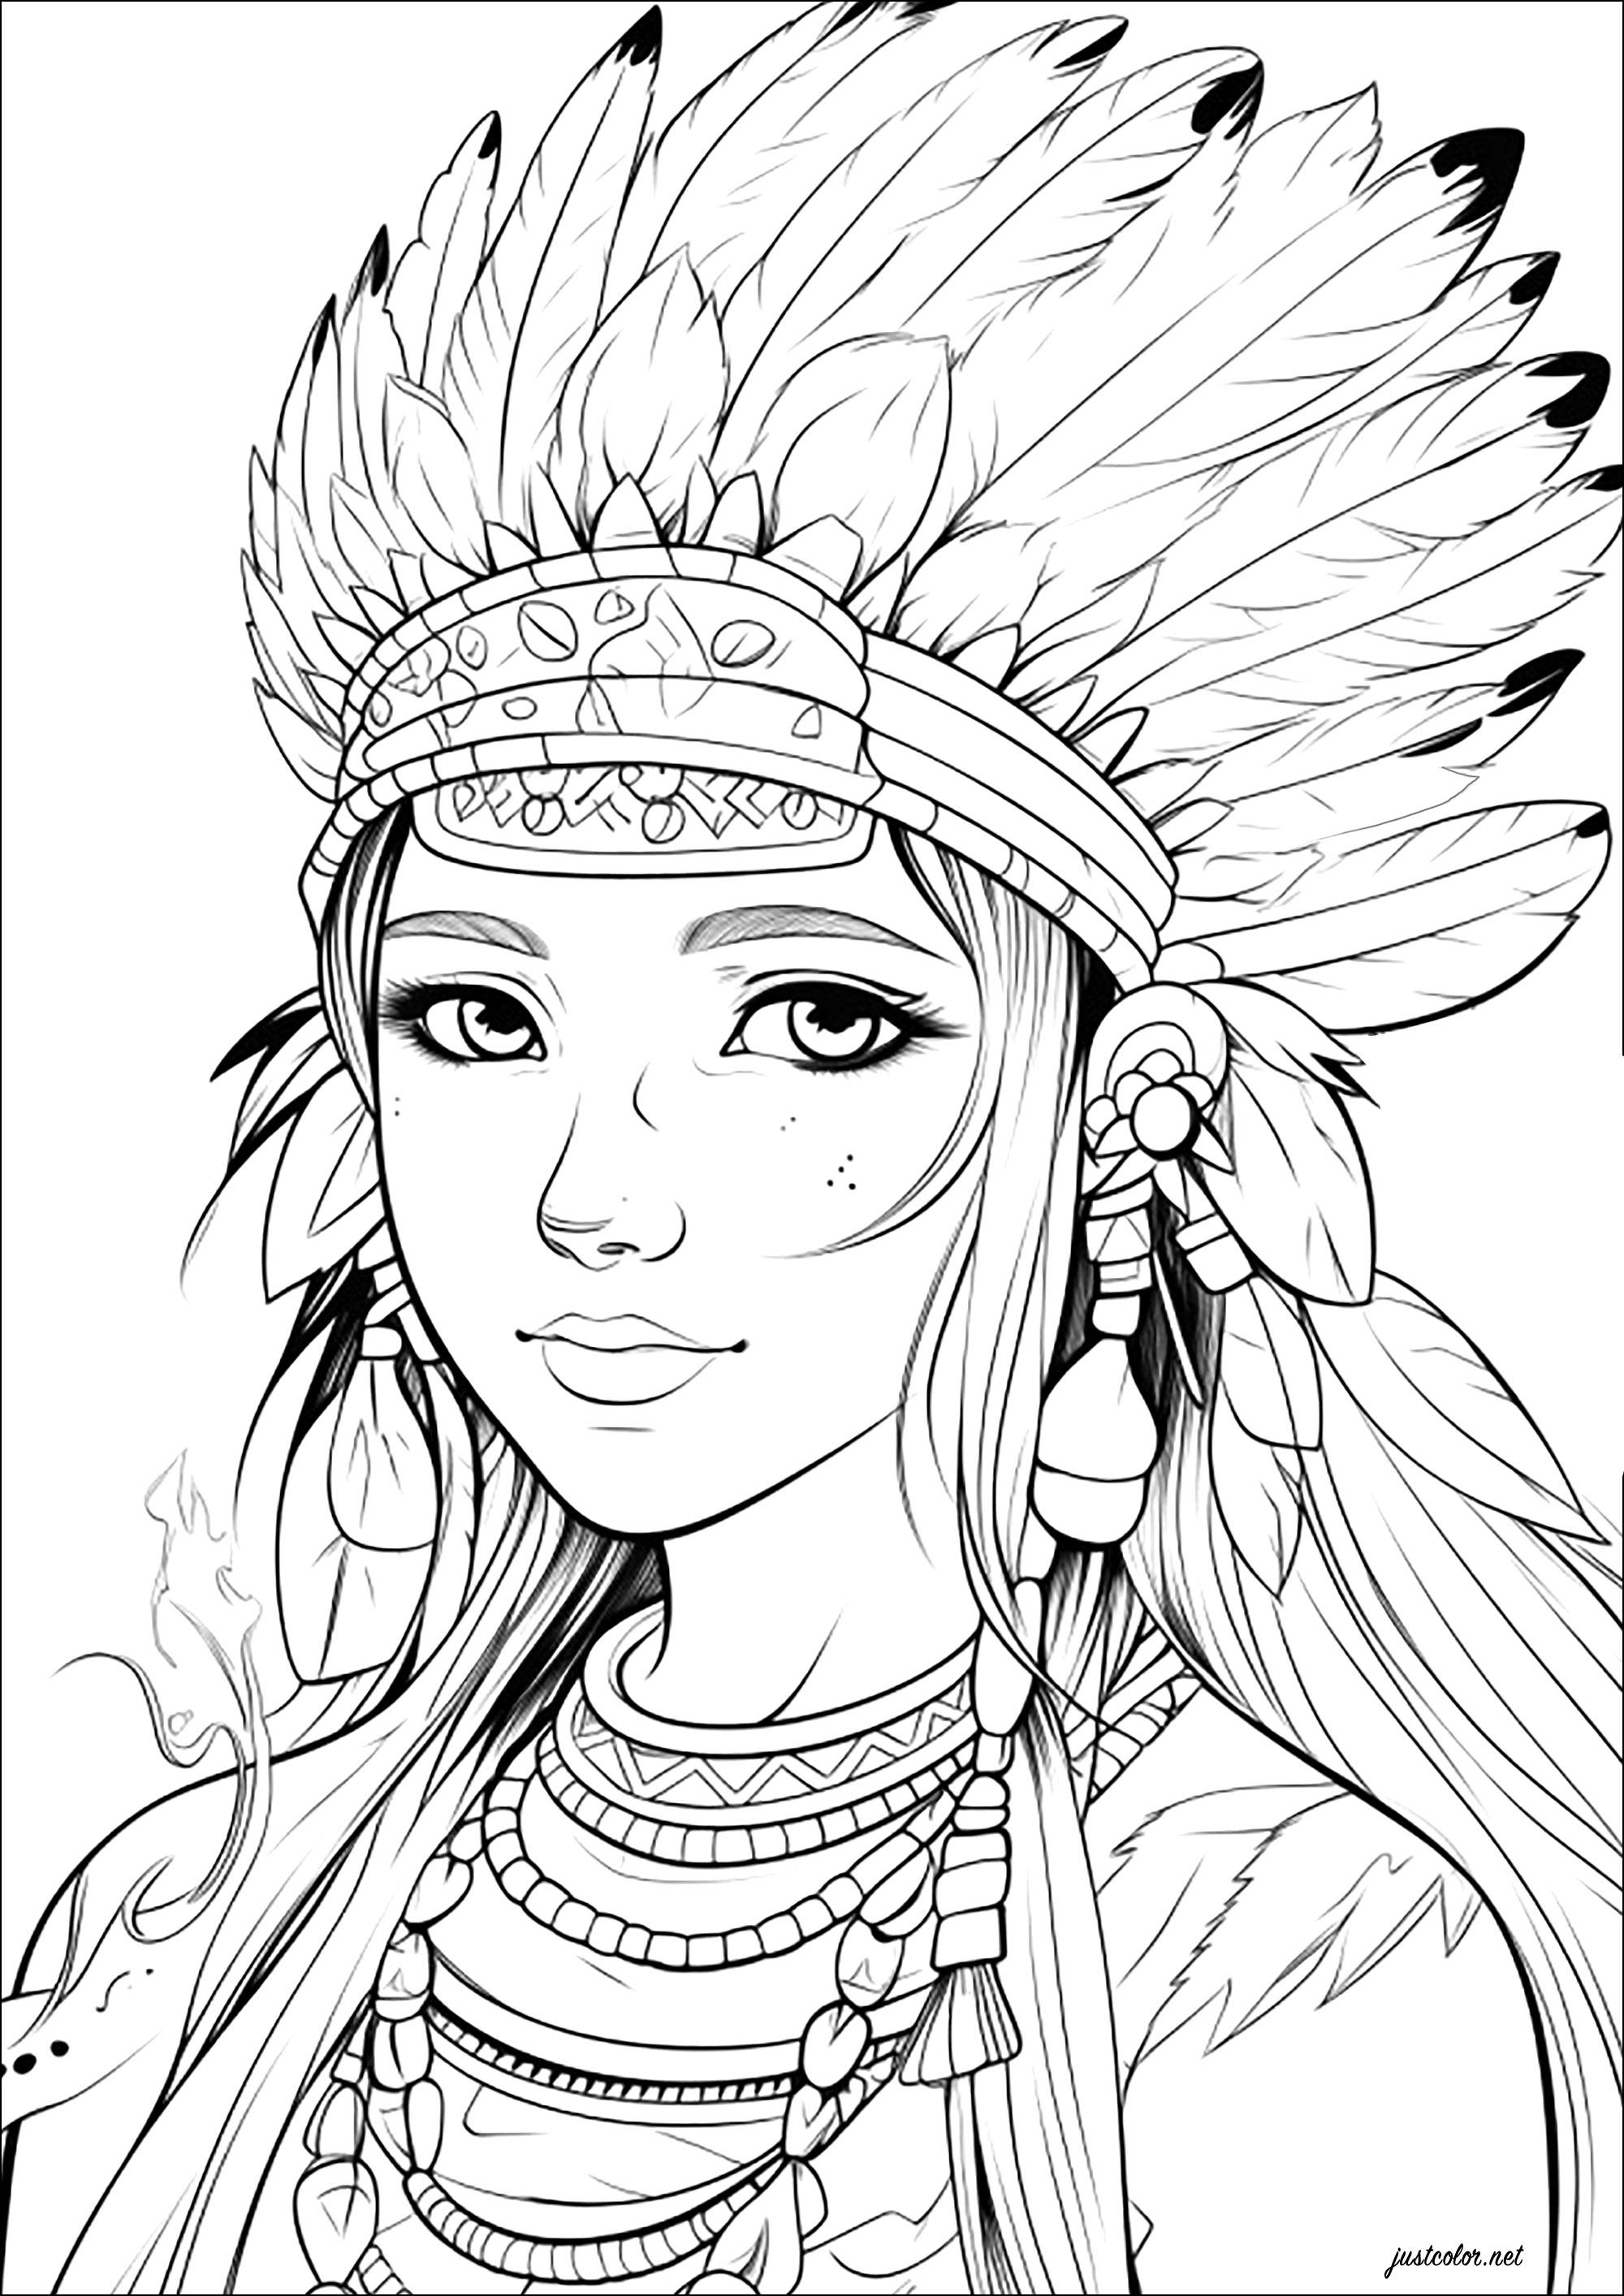 Giovane donna con copricapo dei nativi americani. Immaginate che questo personaggio sia la figlia del capo di una tribù di indiani d'America e vi aspetta un grande divertimento da colorare!